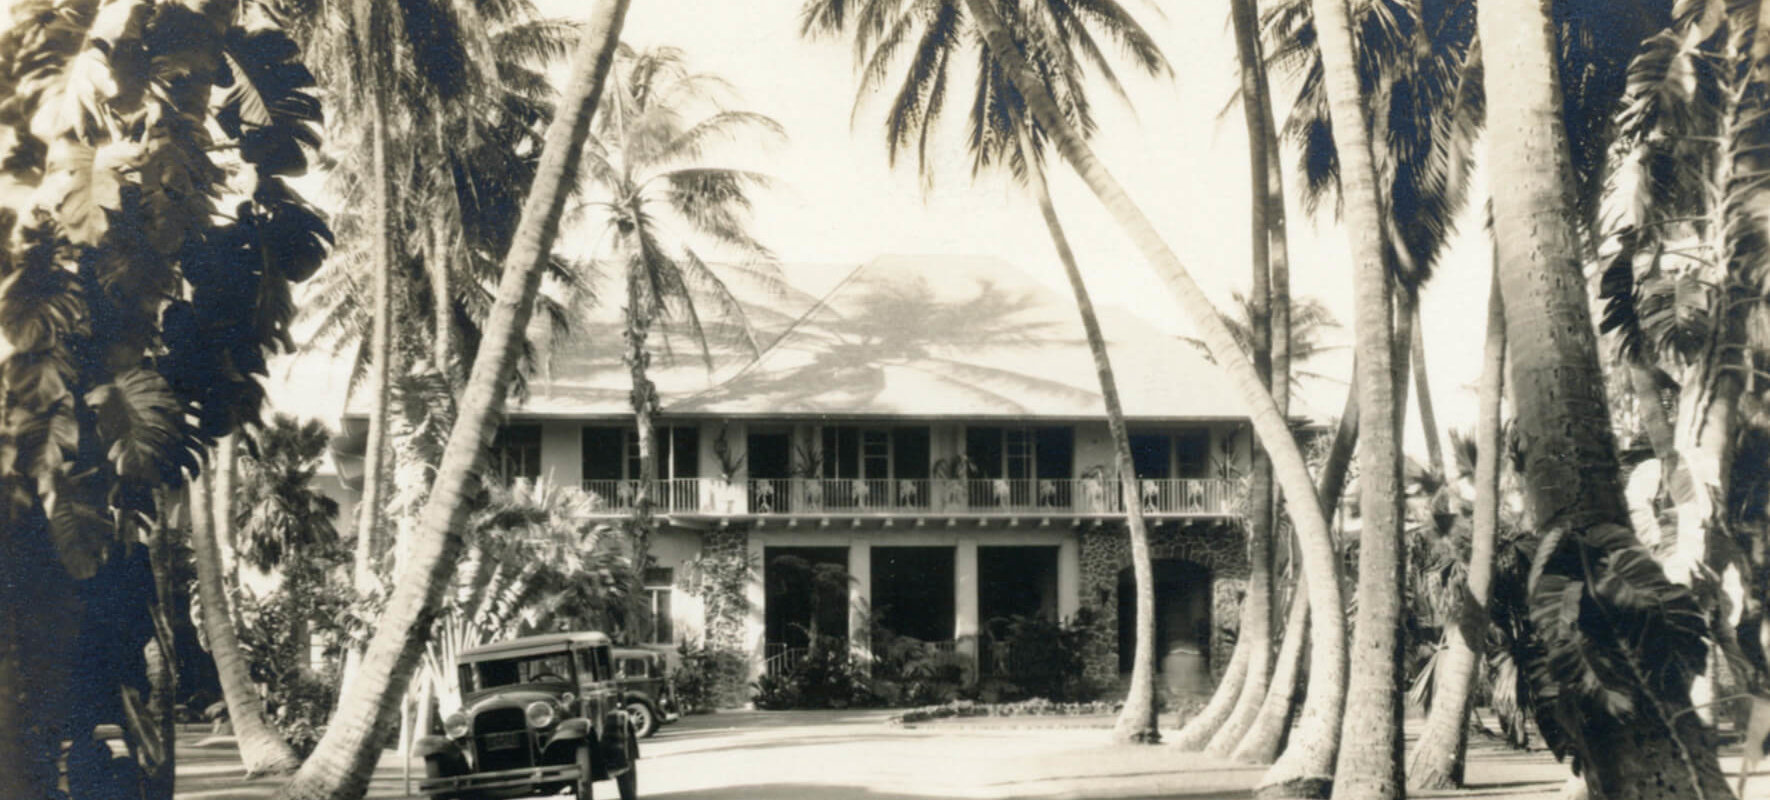 The original Halekulani began in 1907 as a residential hotel, owned by Robert Lewers